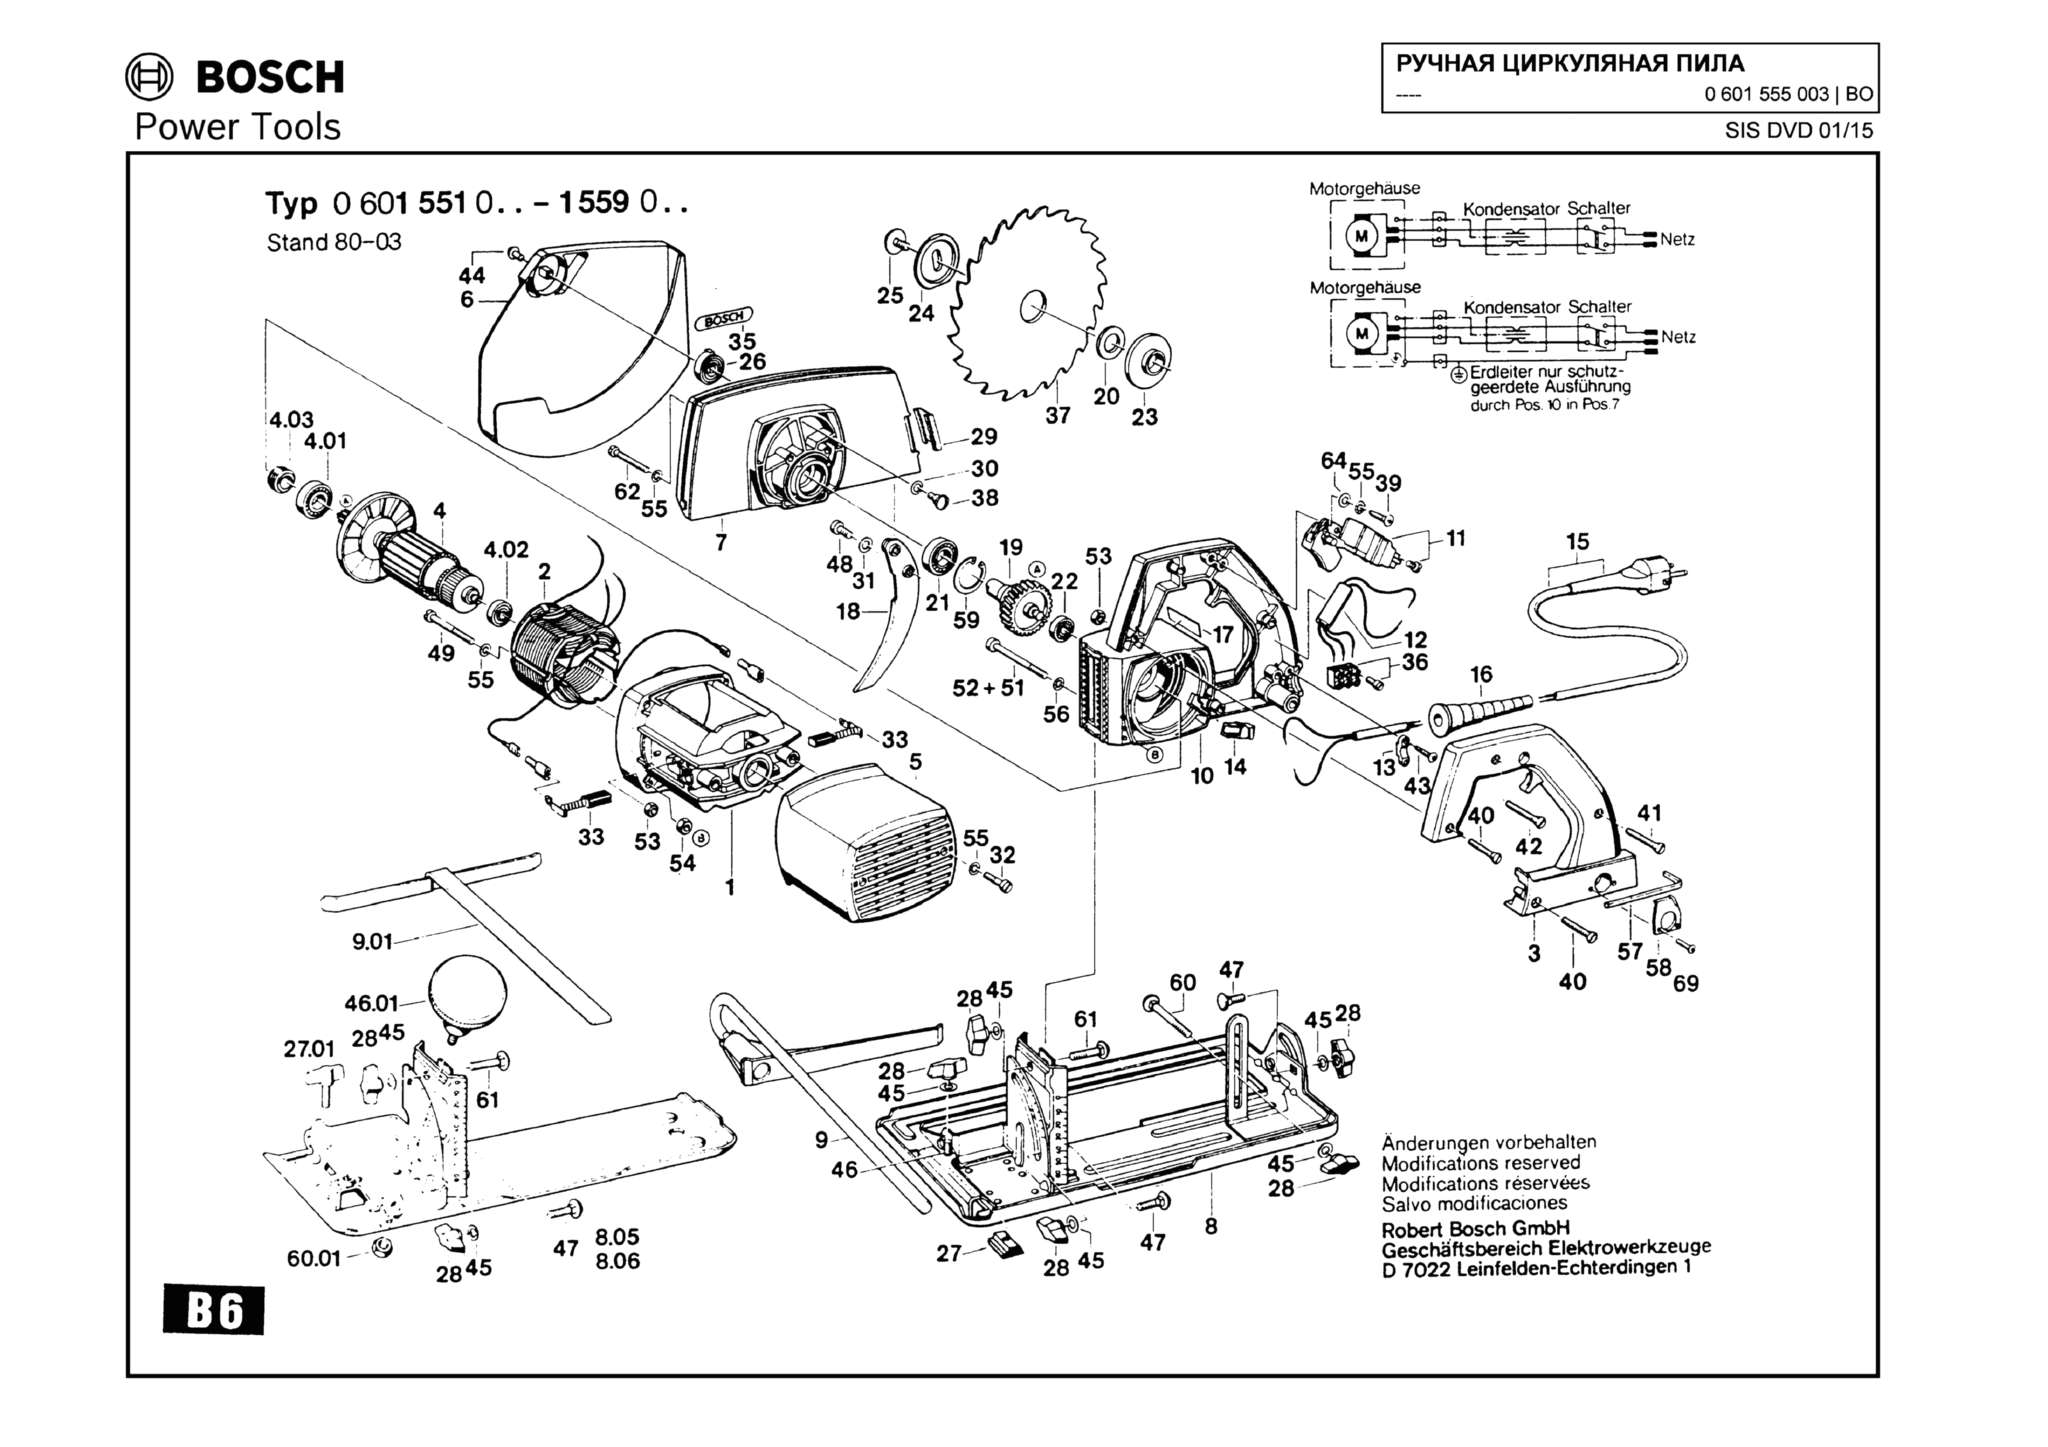 Запчасти, схема и деталировка Bosch (ТИП 0601555003)